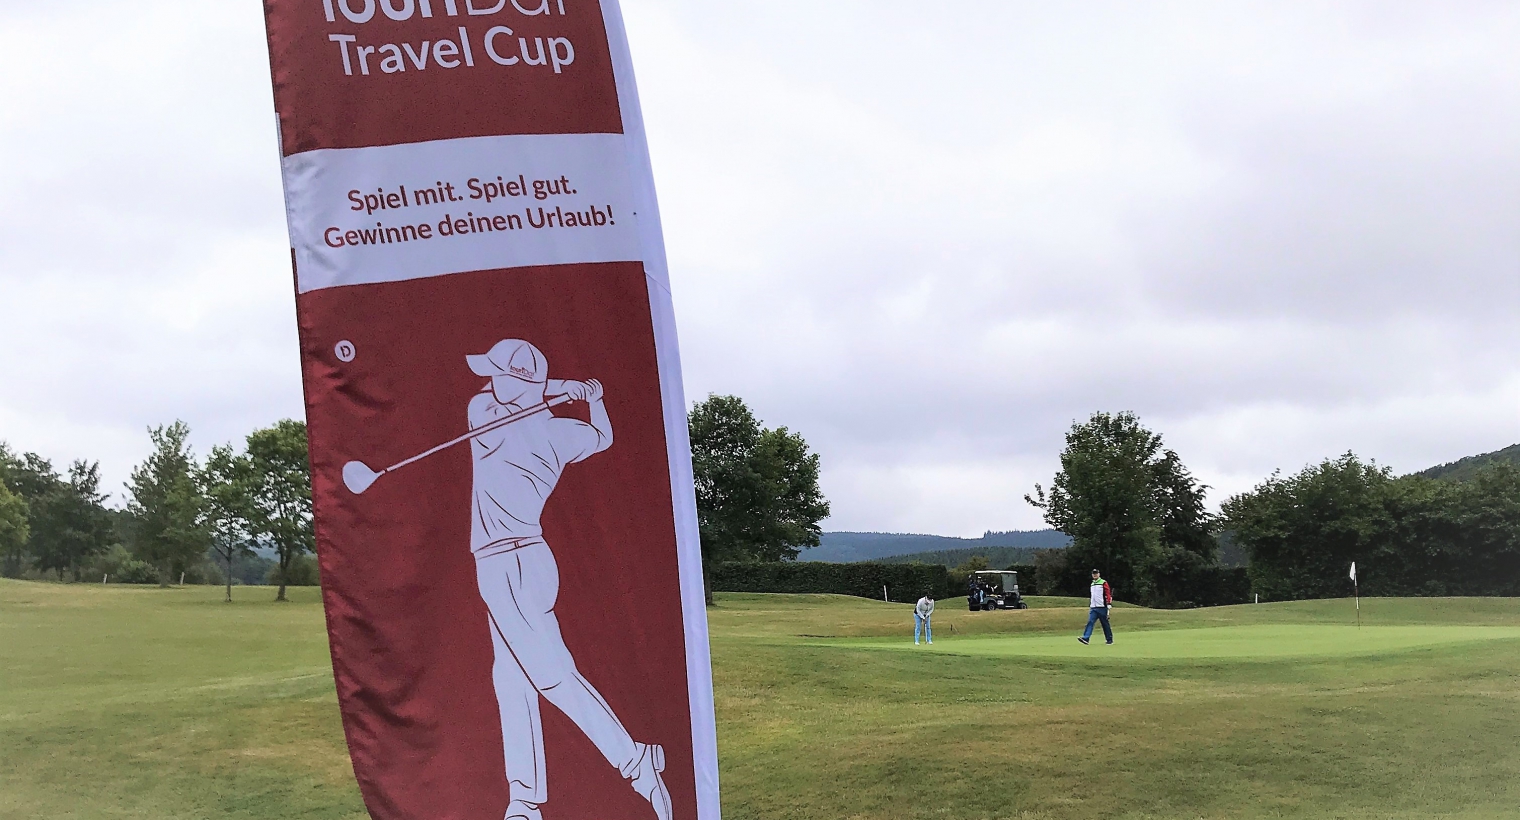 Halbzeit in der Golf Serie touriDat Travel Cup 2019